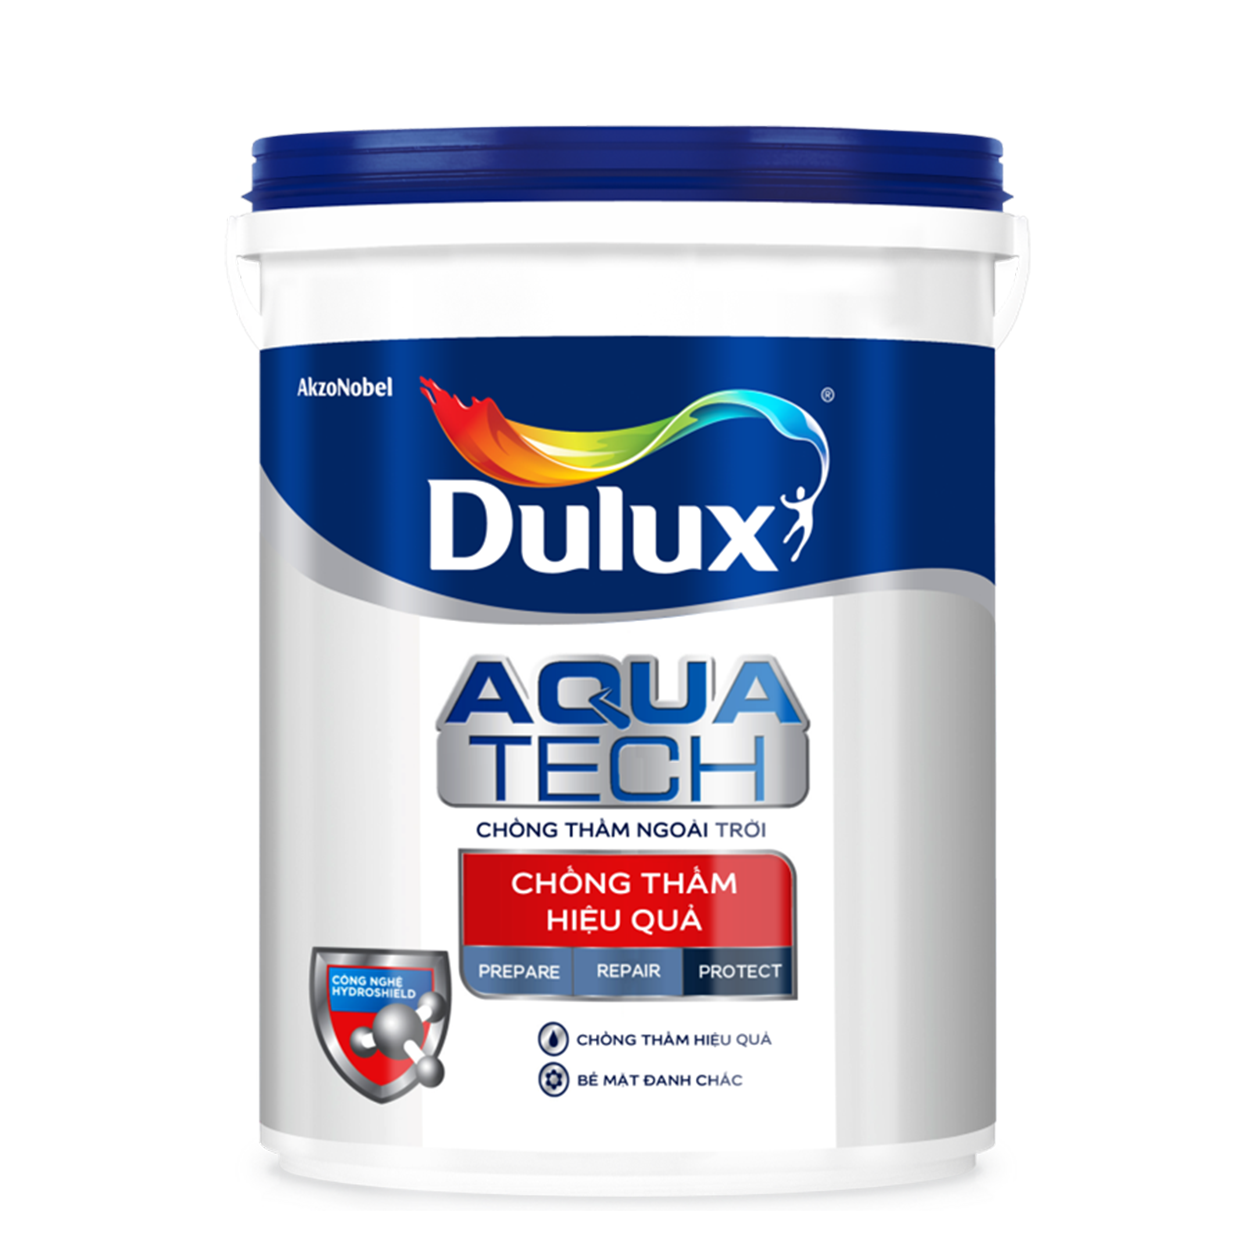 Chất chống thấm Dulux Aquatech C8033 đem đến cho bạn sự tin tưởng khi bảo vệ ngôi nhà của mình khỏi các vấn đề về thấm nước. Với chất lượng đảm bảo và khả năng chống thấm tuyệt vời, sản phẩm này xứng đáng để bạn tìm hiểu.